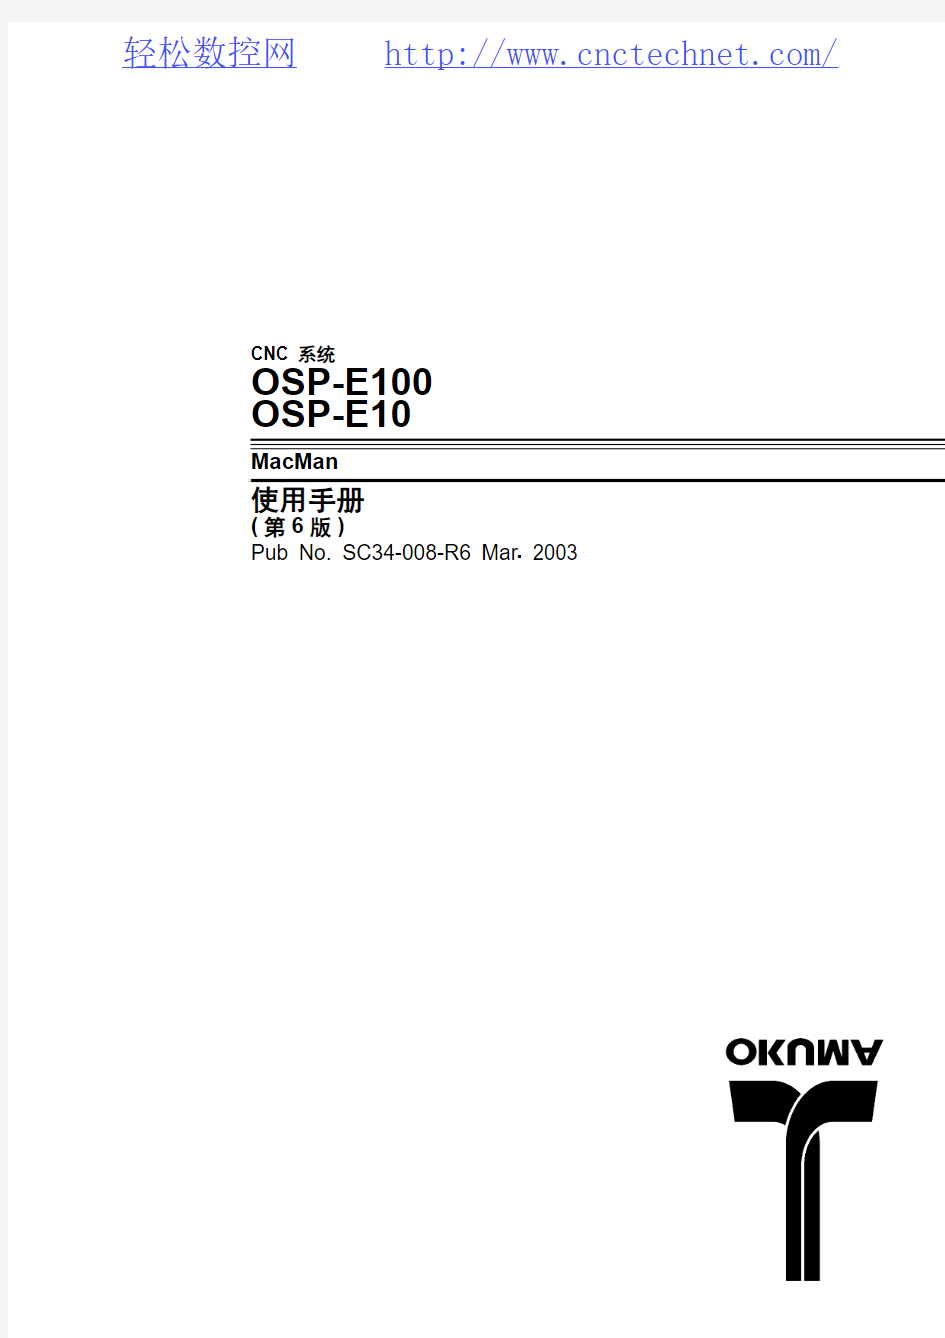 OKUMA OSP-E100使用手册_CNCTECHNET